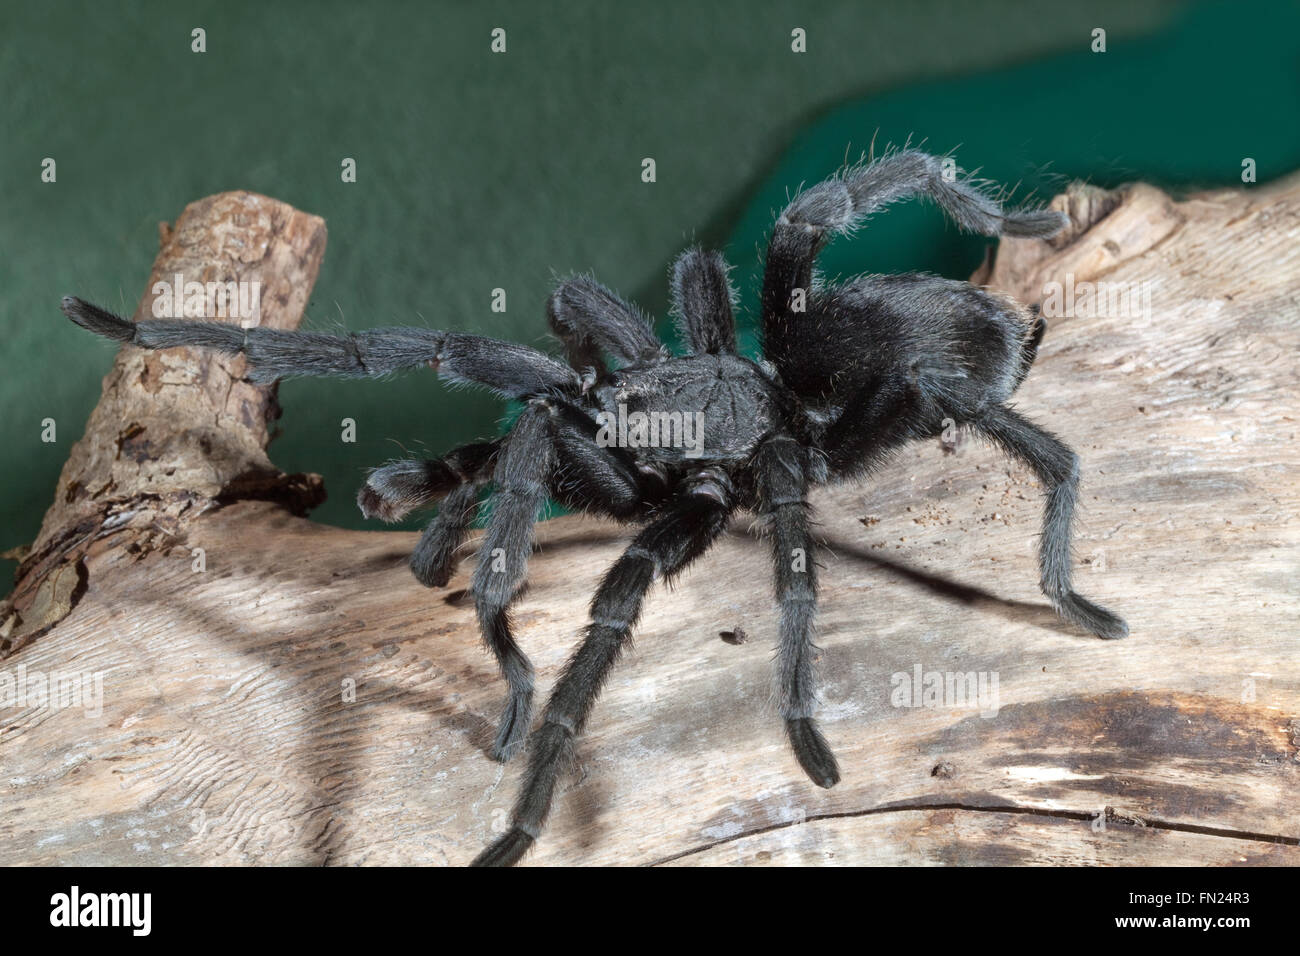 Tarantula Spider noir brésilien (Grammostola pulchra). L'éducation d'un membre antérieur, révélateur d'une appréhension, d'avertissement, de posture. Banque D'Images